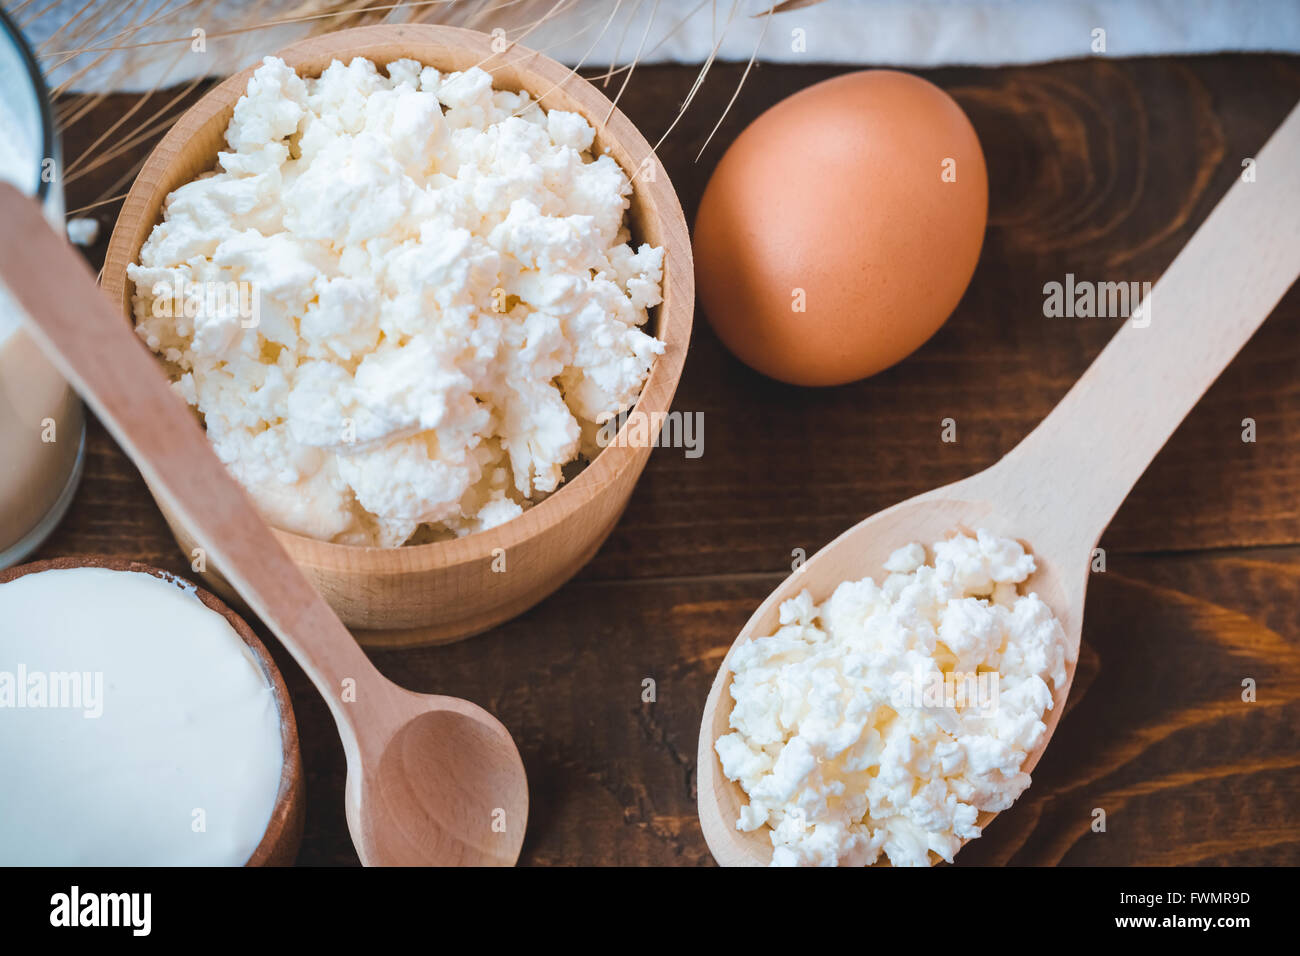 Natürliche selbstgemachte Produkte: Milch, Käse, Sauerrahm und Eiern auf den alten hölzernen Hintergrund mit freier Platz für Ihren Text Stockfoto